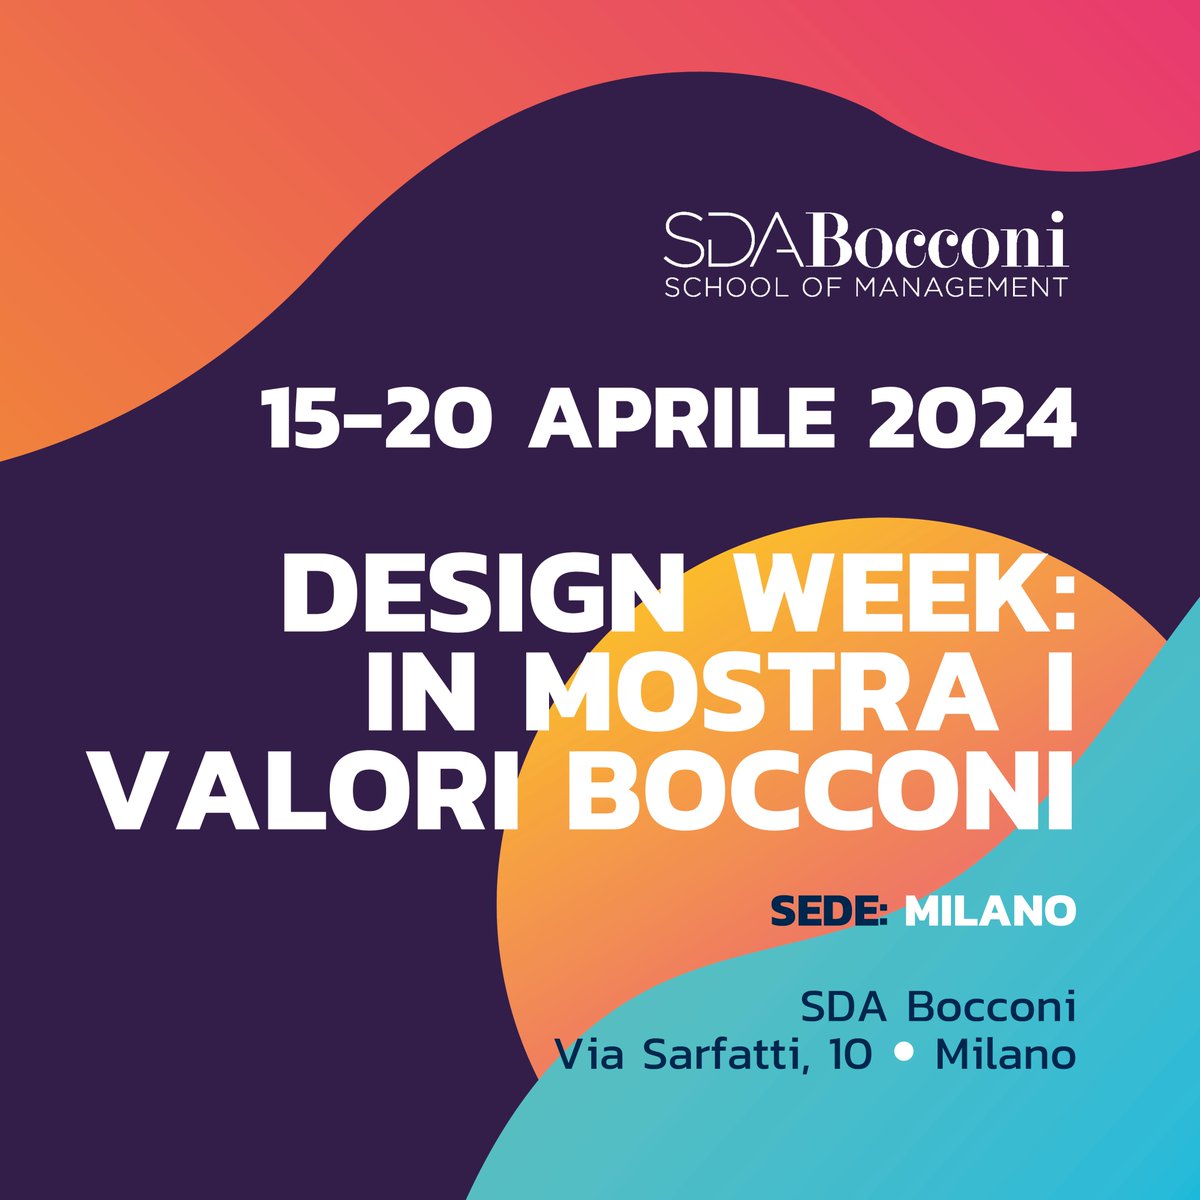 #DesignWeek2024: SDA Bocconi & Roberto Palomba presentano una mostra esclusiva dal 15 al 21 aprile. Scopri 8 pezzi che riflettono i valori Bocconi e esplora il design sostenibile del nostro campus: sdabocconi.it/it/design-week…